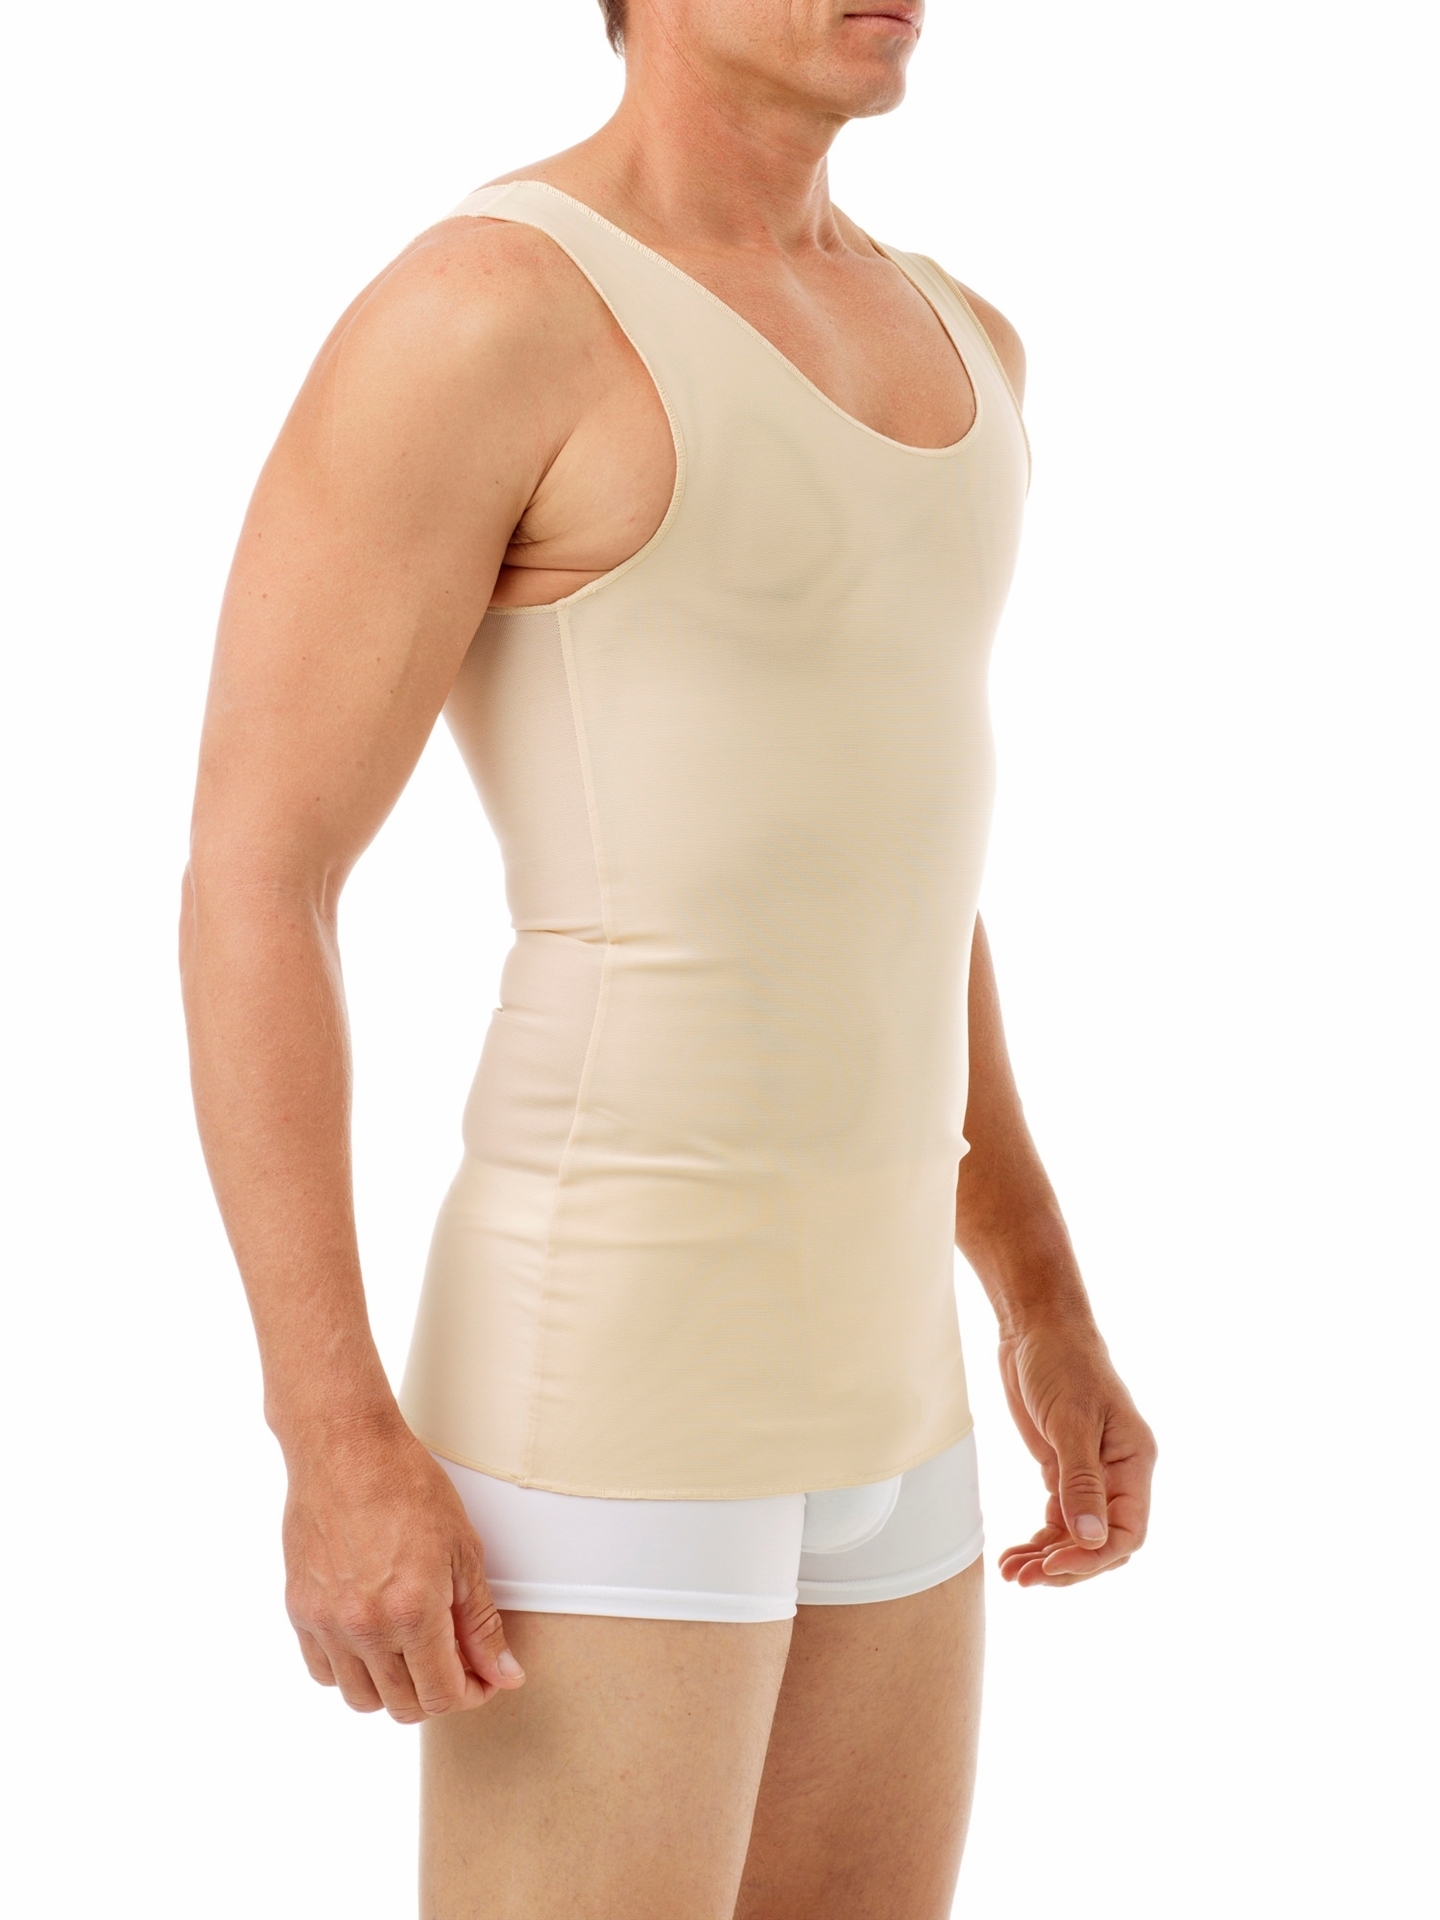 Sleeveless Shapewear Tank Tops for Men Back Support Posture Corrector  Shockproof Vest Chest Binder Trans Short Corset (Color : Beige, Size :  Large)